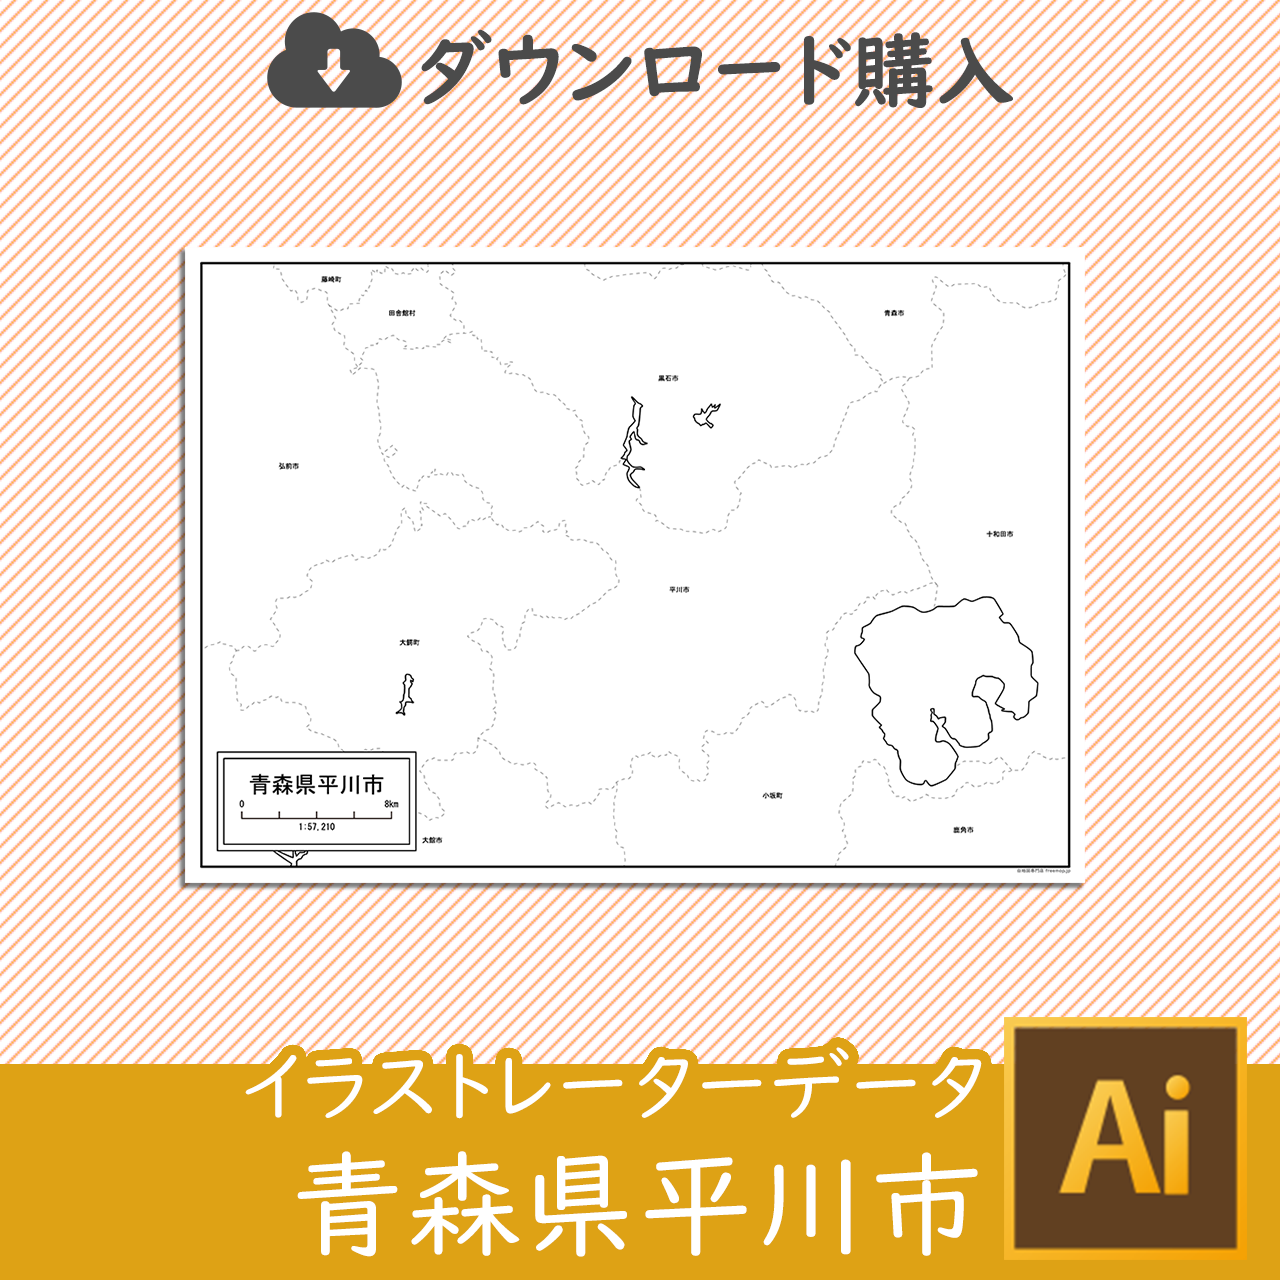 平川市のaiデータのサムネイル画像